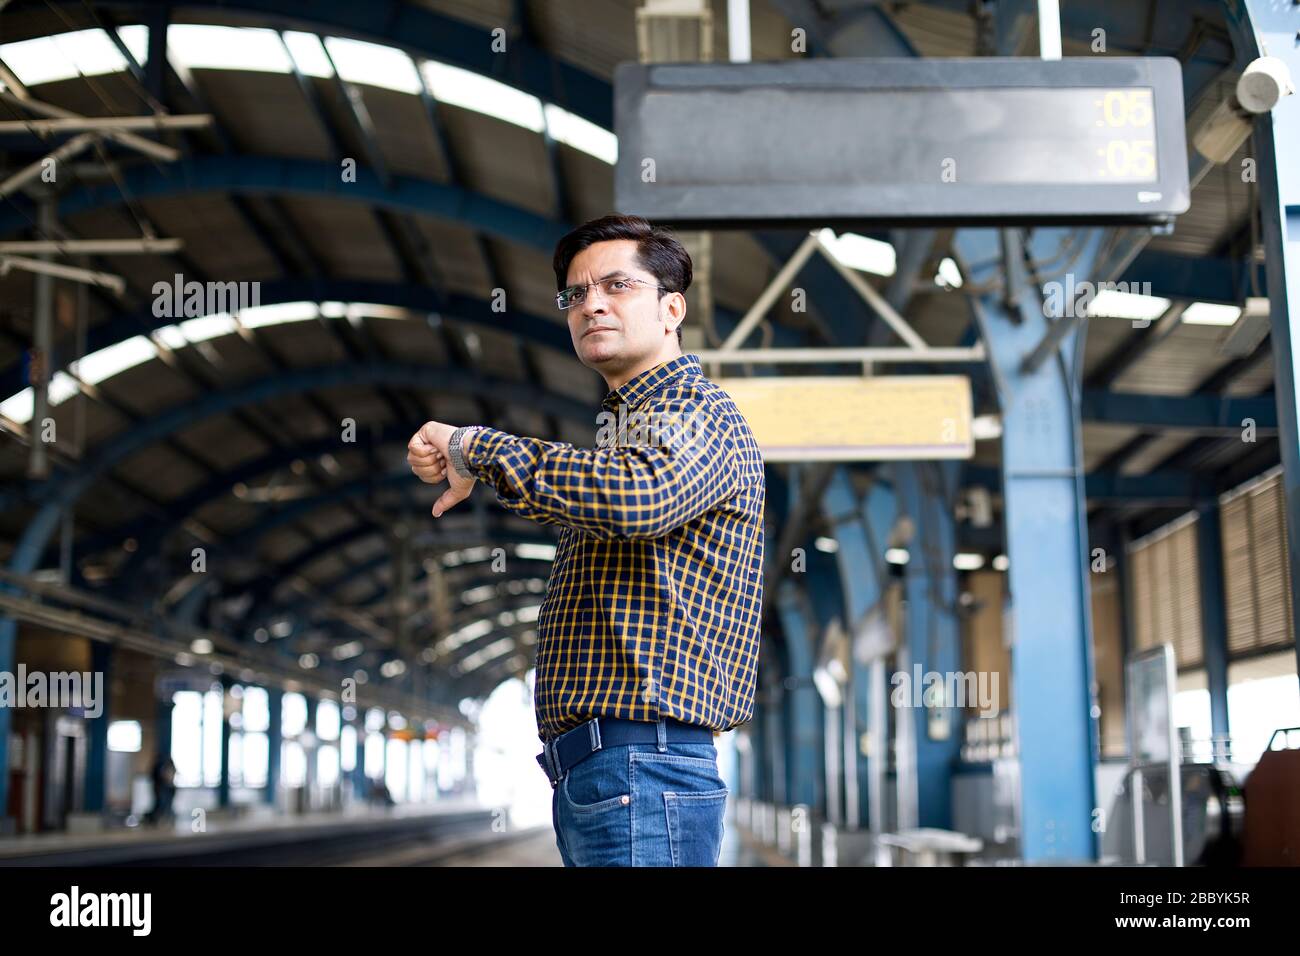 Mann überprüft die Zeit, während er an der Metrostation wartet Stockfoto